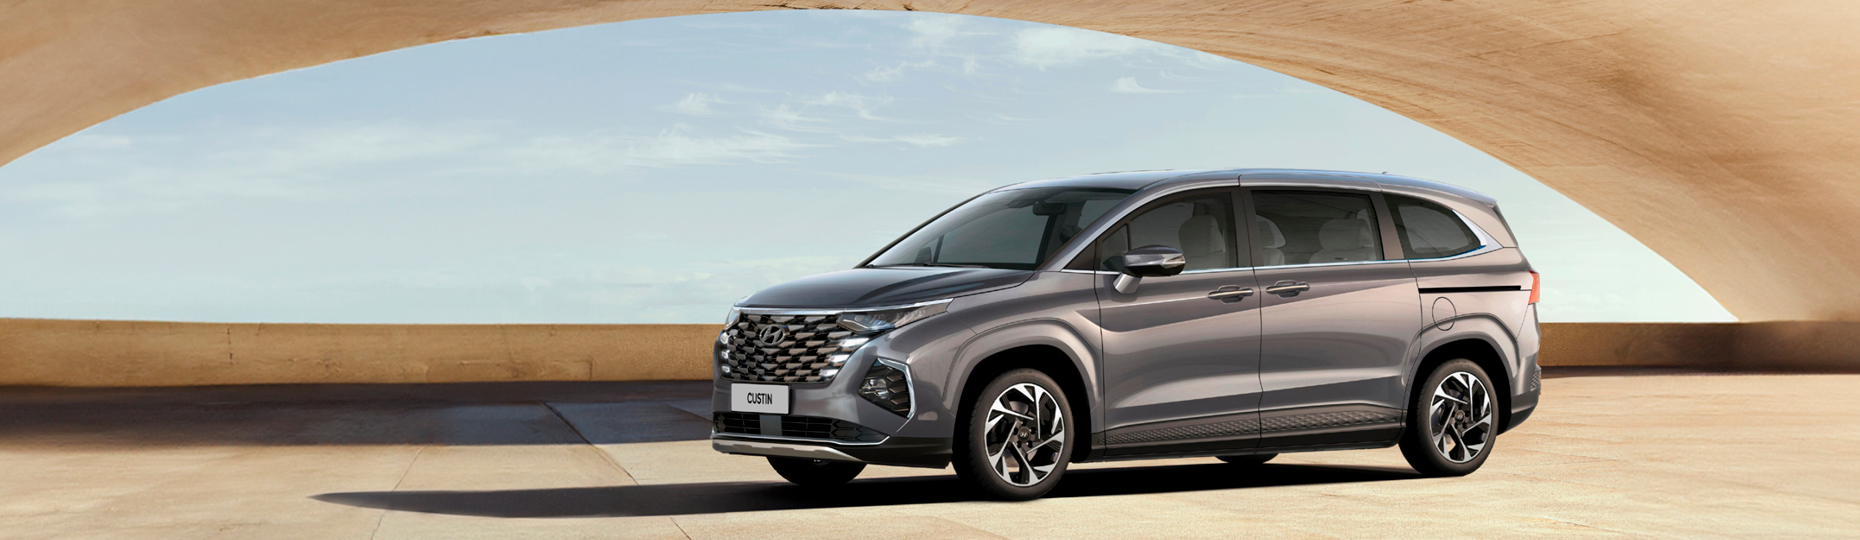 Цены и комплектации нового Hyundai Custin в Алматы